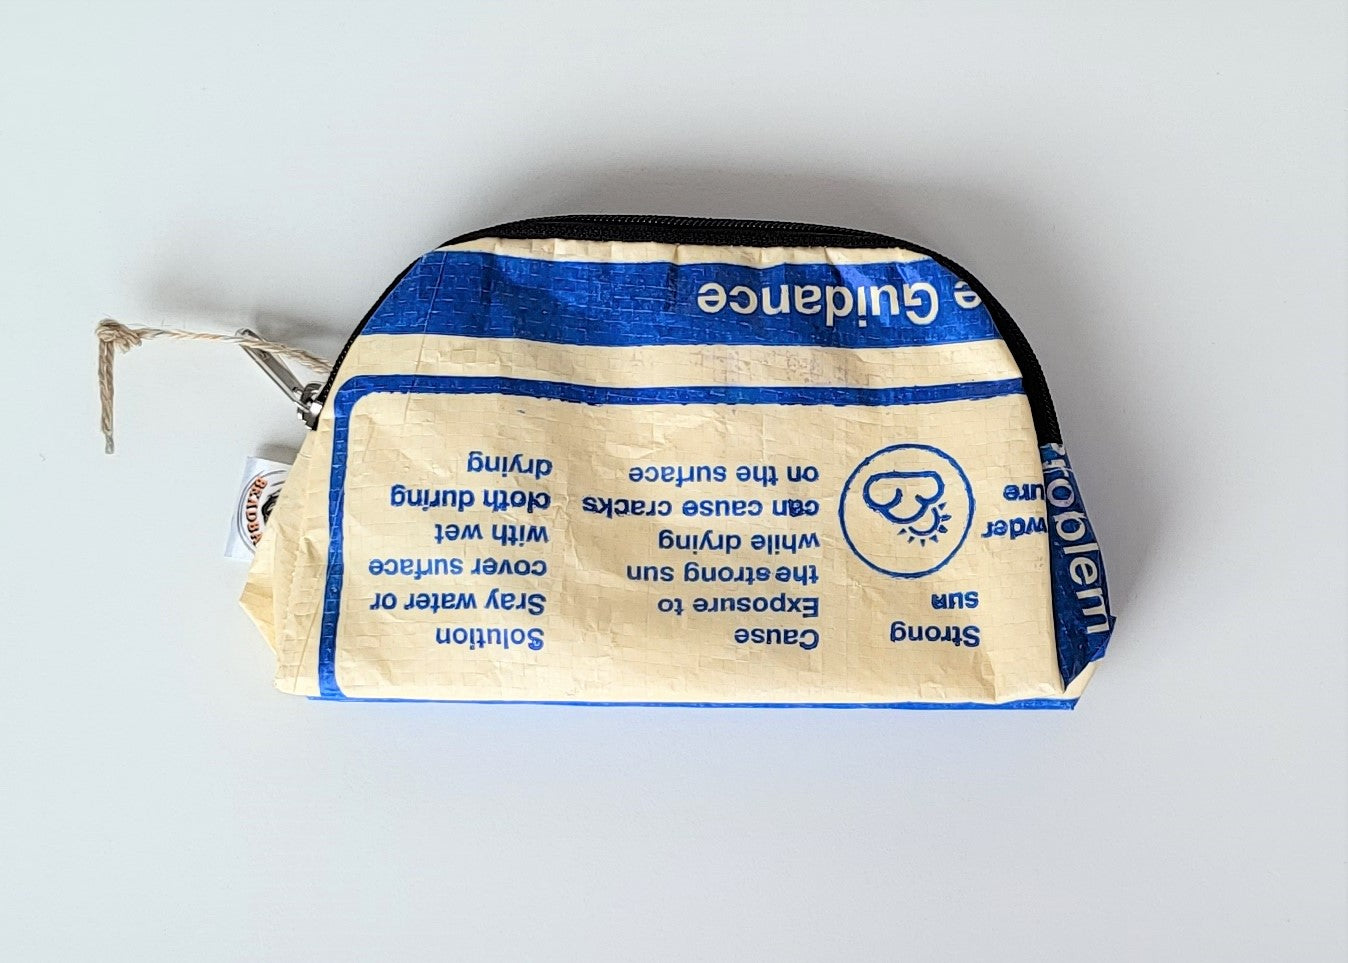 Kulturtasche in blau-weiß mit Reisverschluss